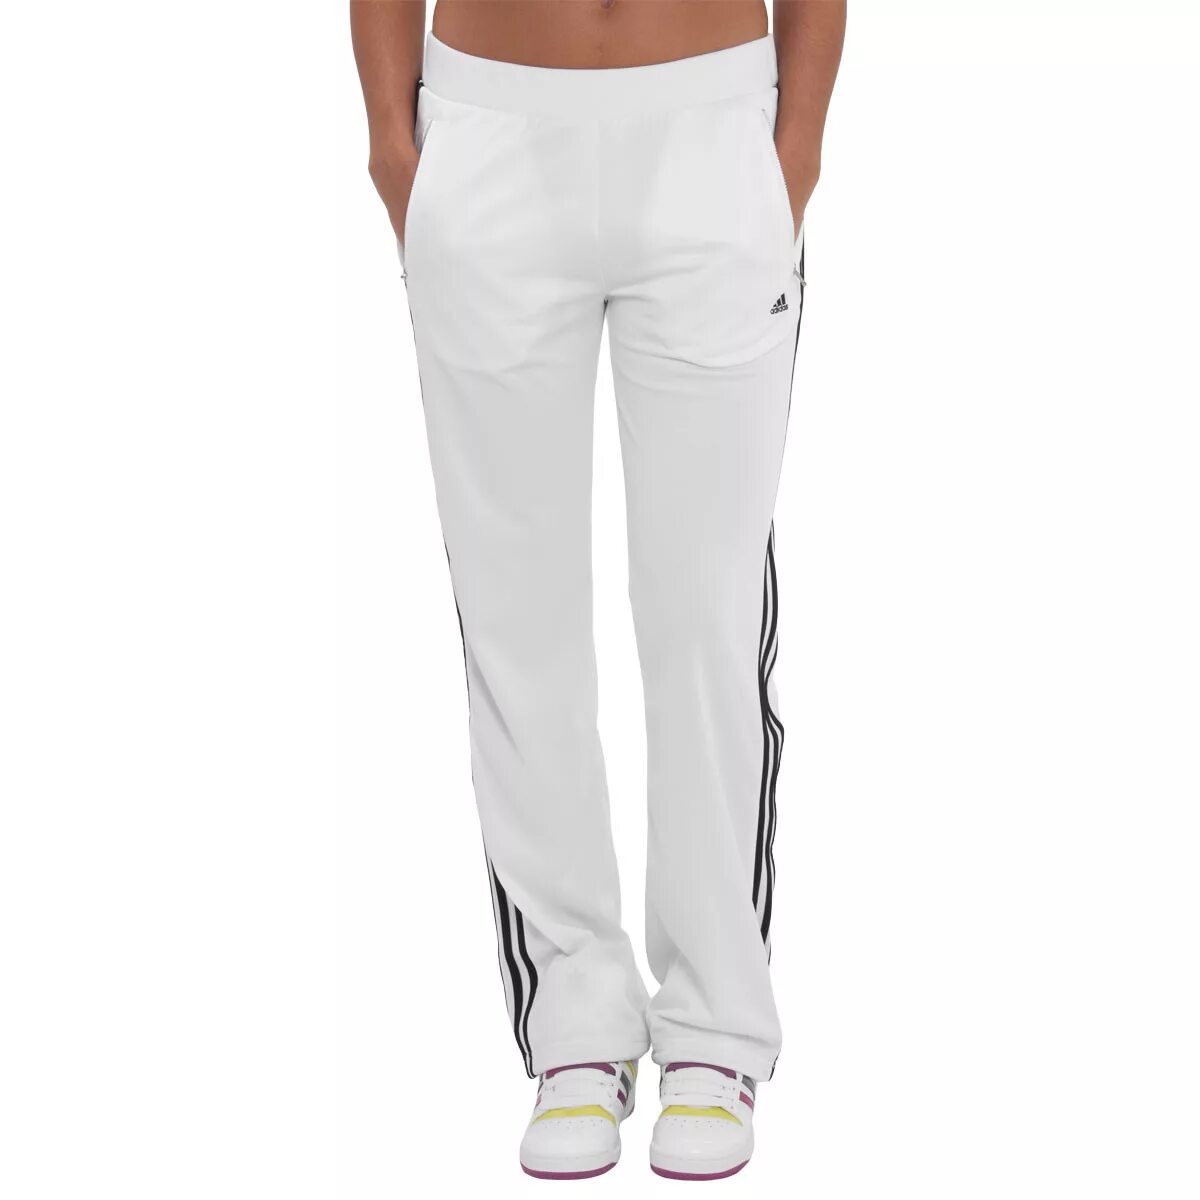 Валберис белые брюки. H16283 спортивные брюки женские adidas. Брюки спортивные адидас белый. Полиэстеровые штаны женские адидас. Брюки адидас женские слаксы.